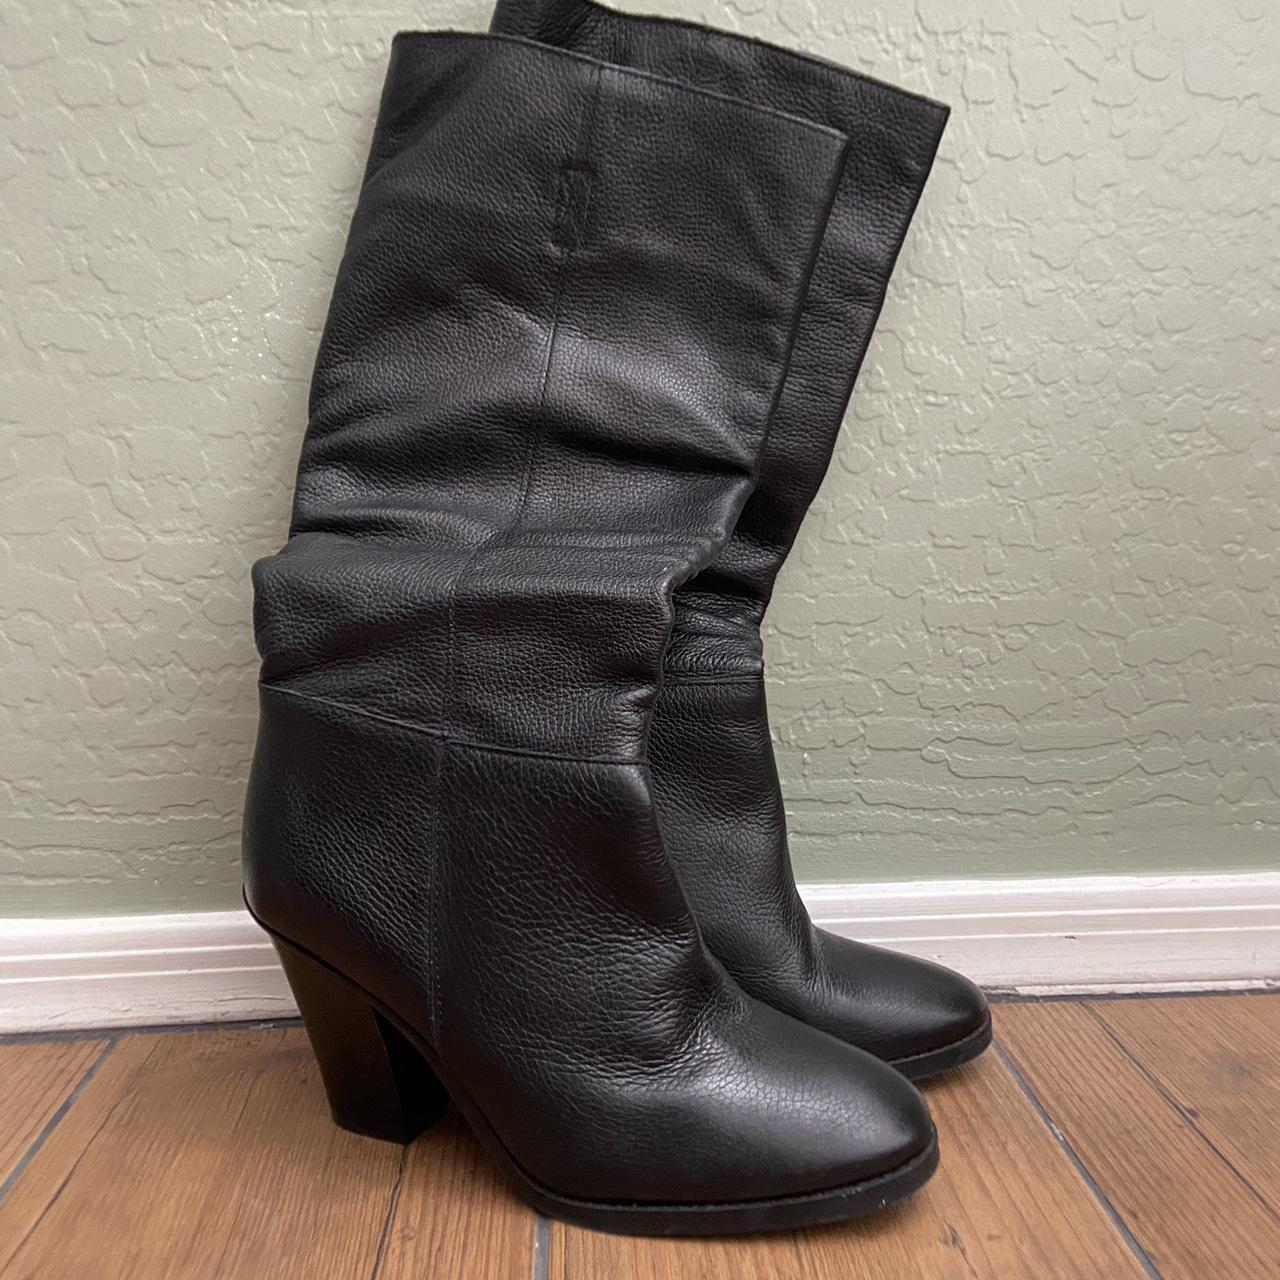 Matisse Raquel Black Leather Boots 4.5’’ heel Size... - Depop